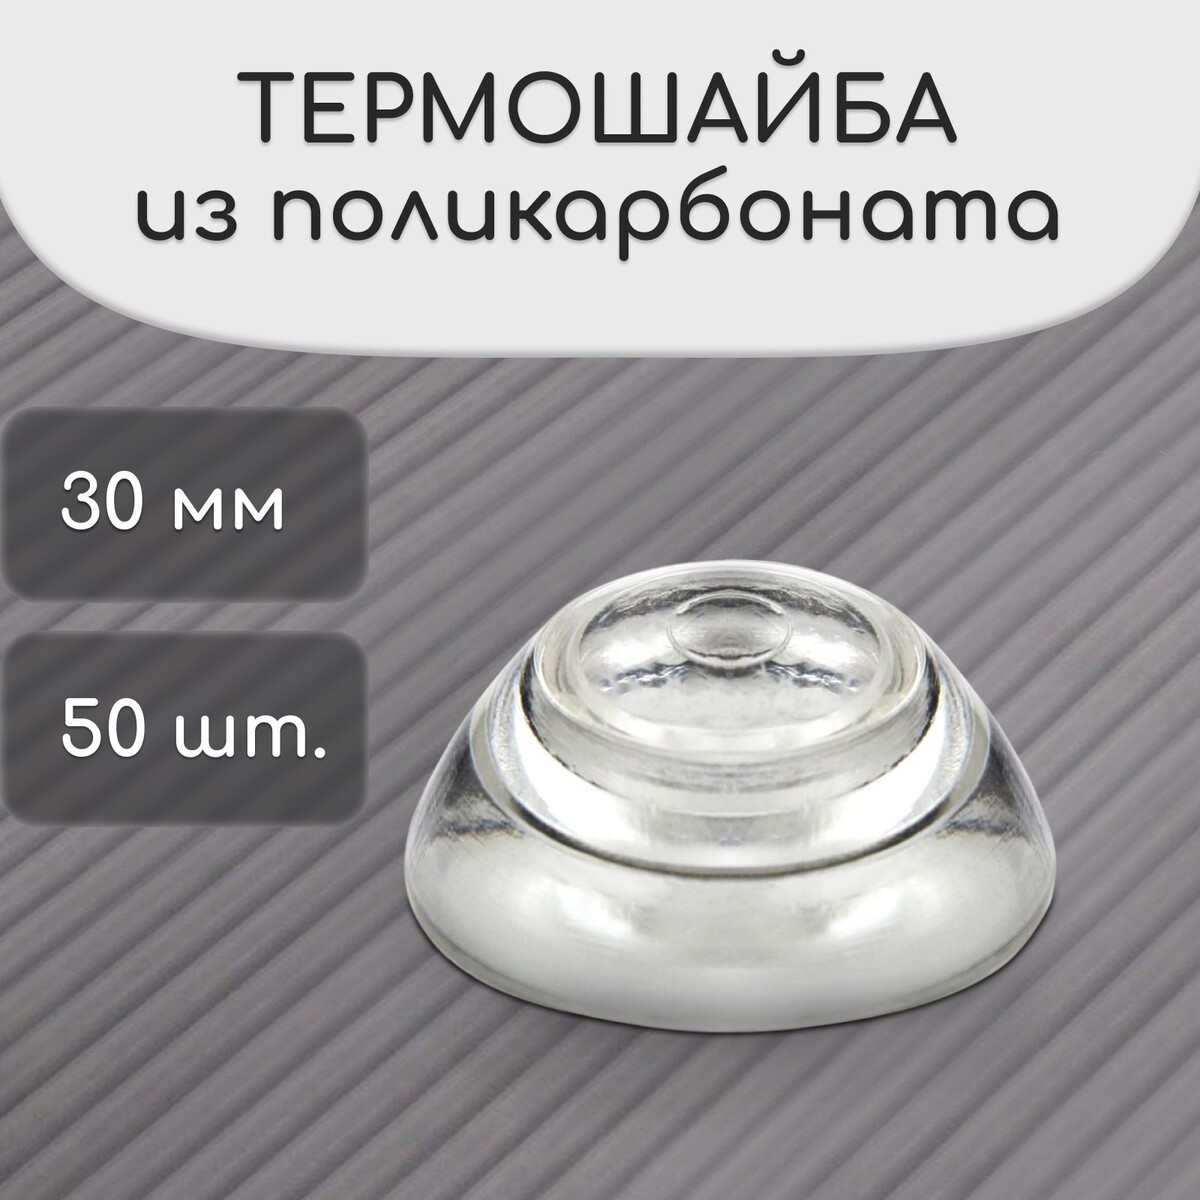 Термошайба мини из поликарбоната, d = 30 мм, уф-защита, прозрачная, набор 50 шт. No brand, цвет прозрачный